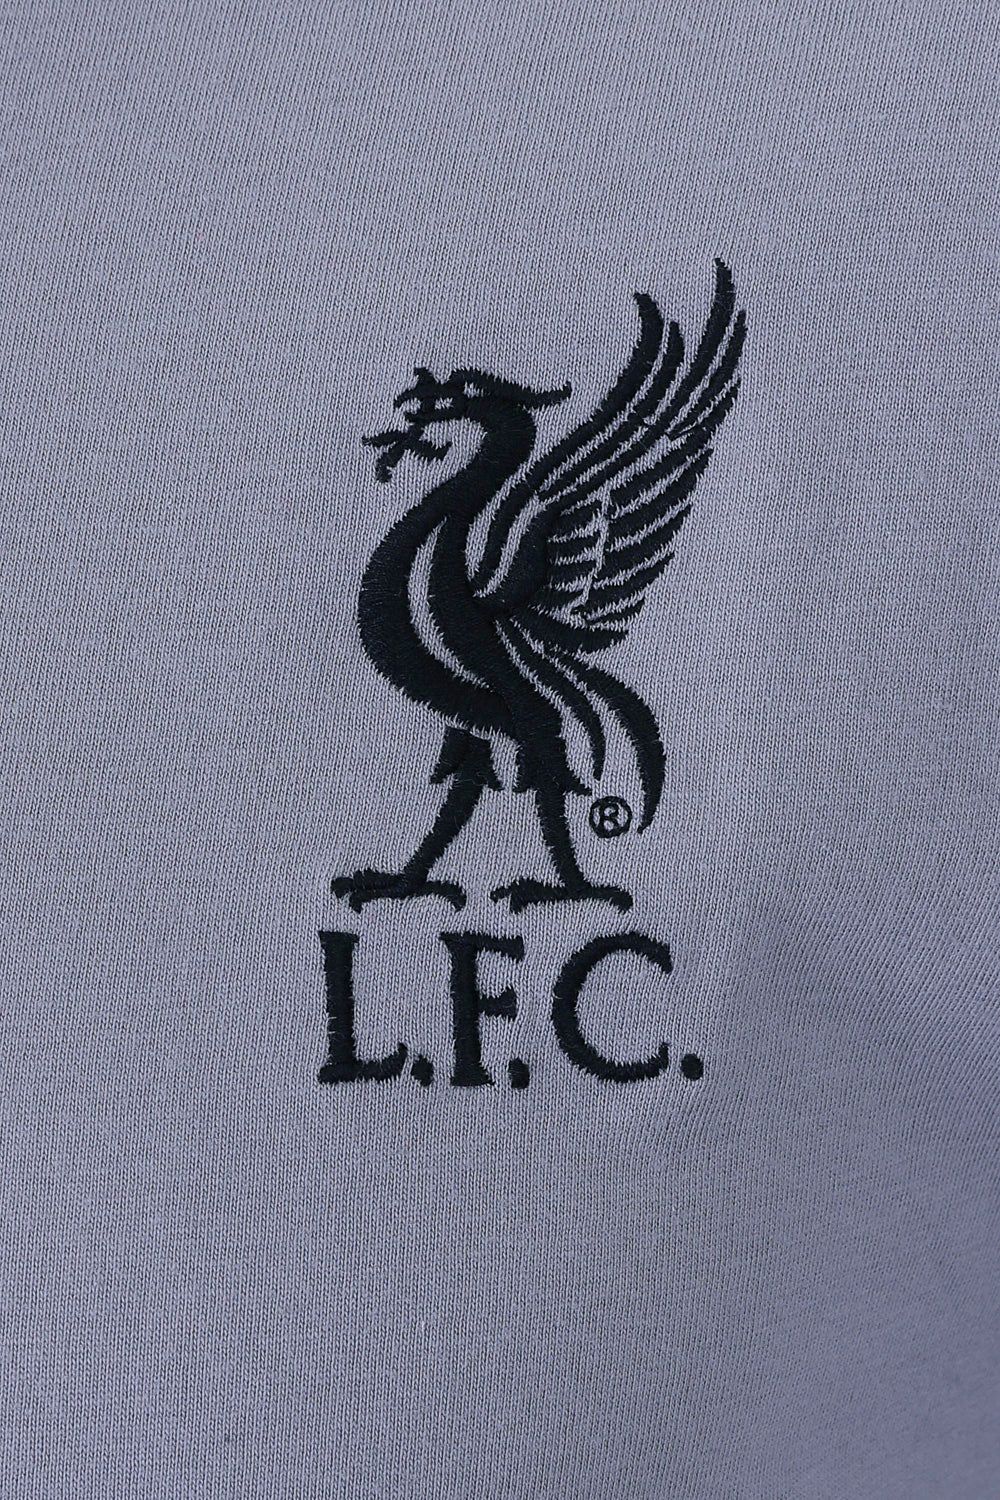 Mens Official Liverpool Football Club Long Pyjamas - Pyjamas.com